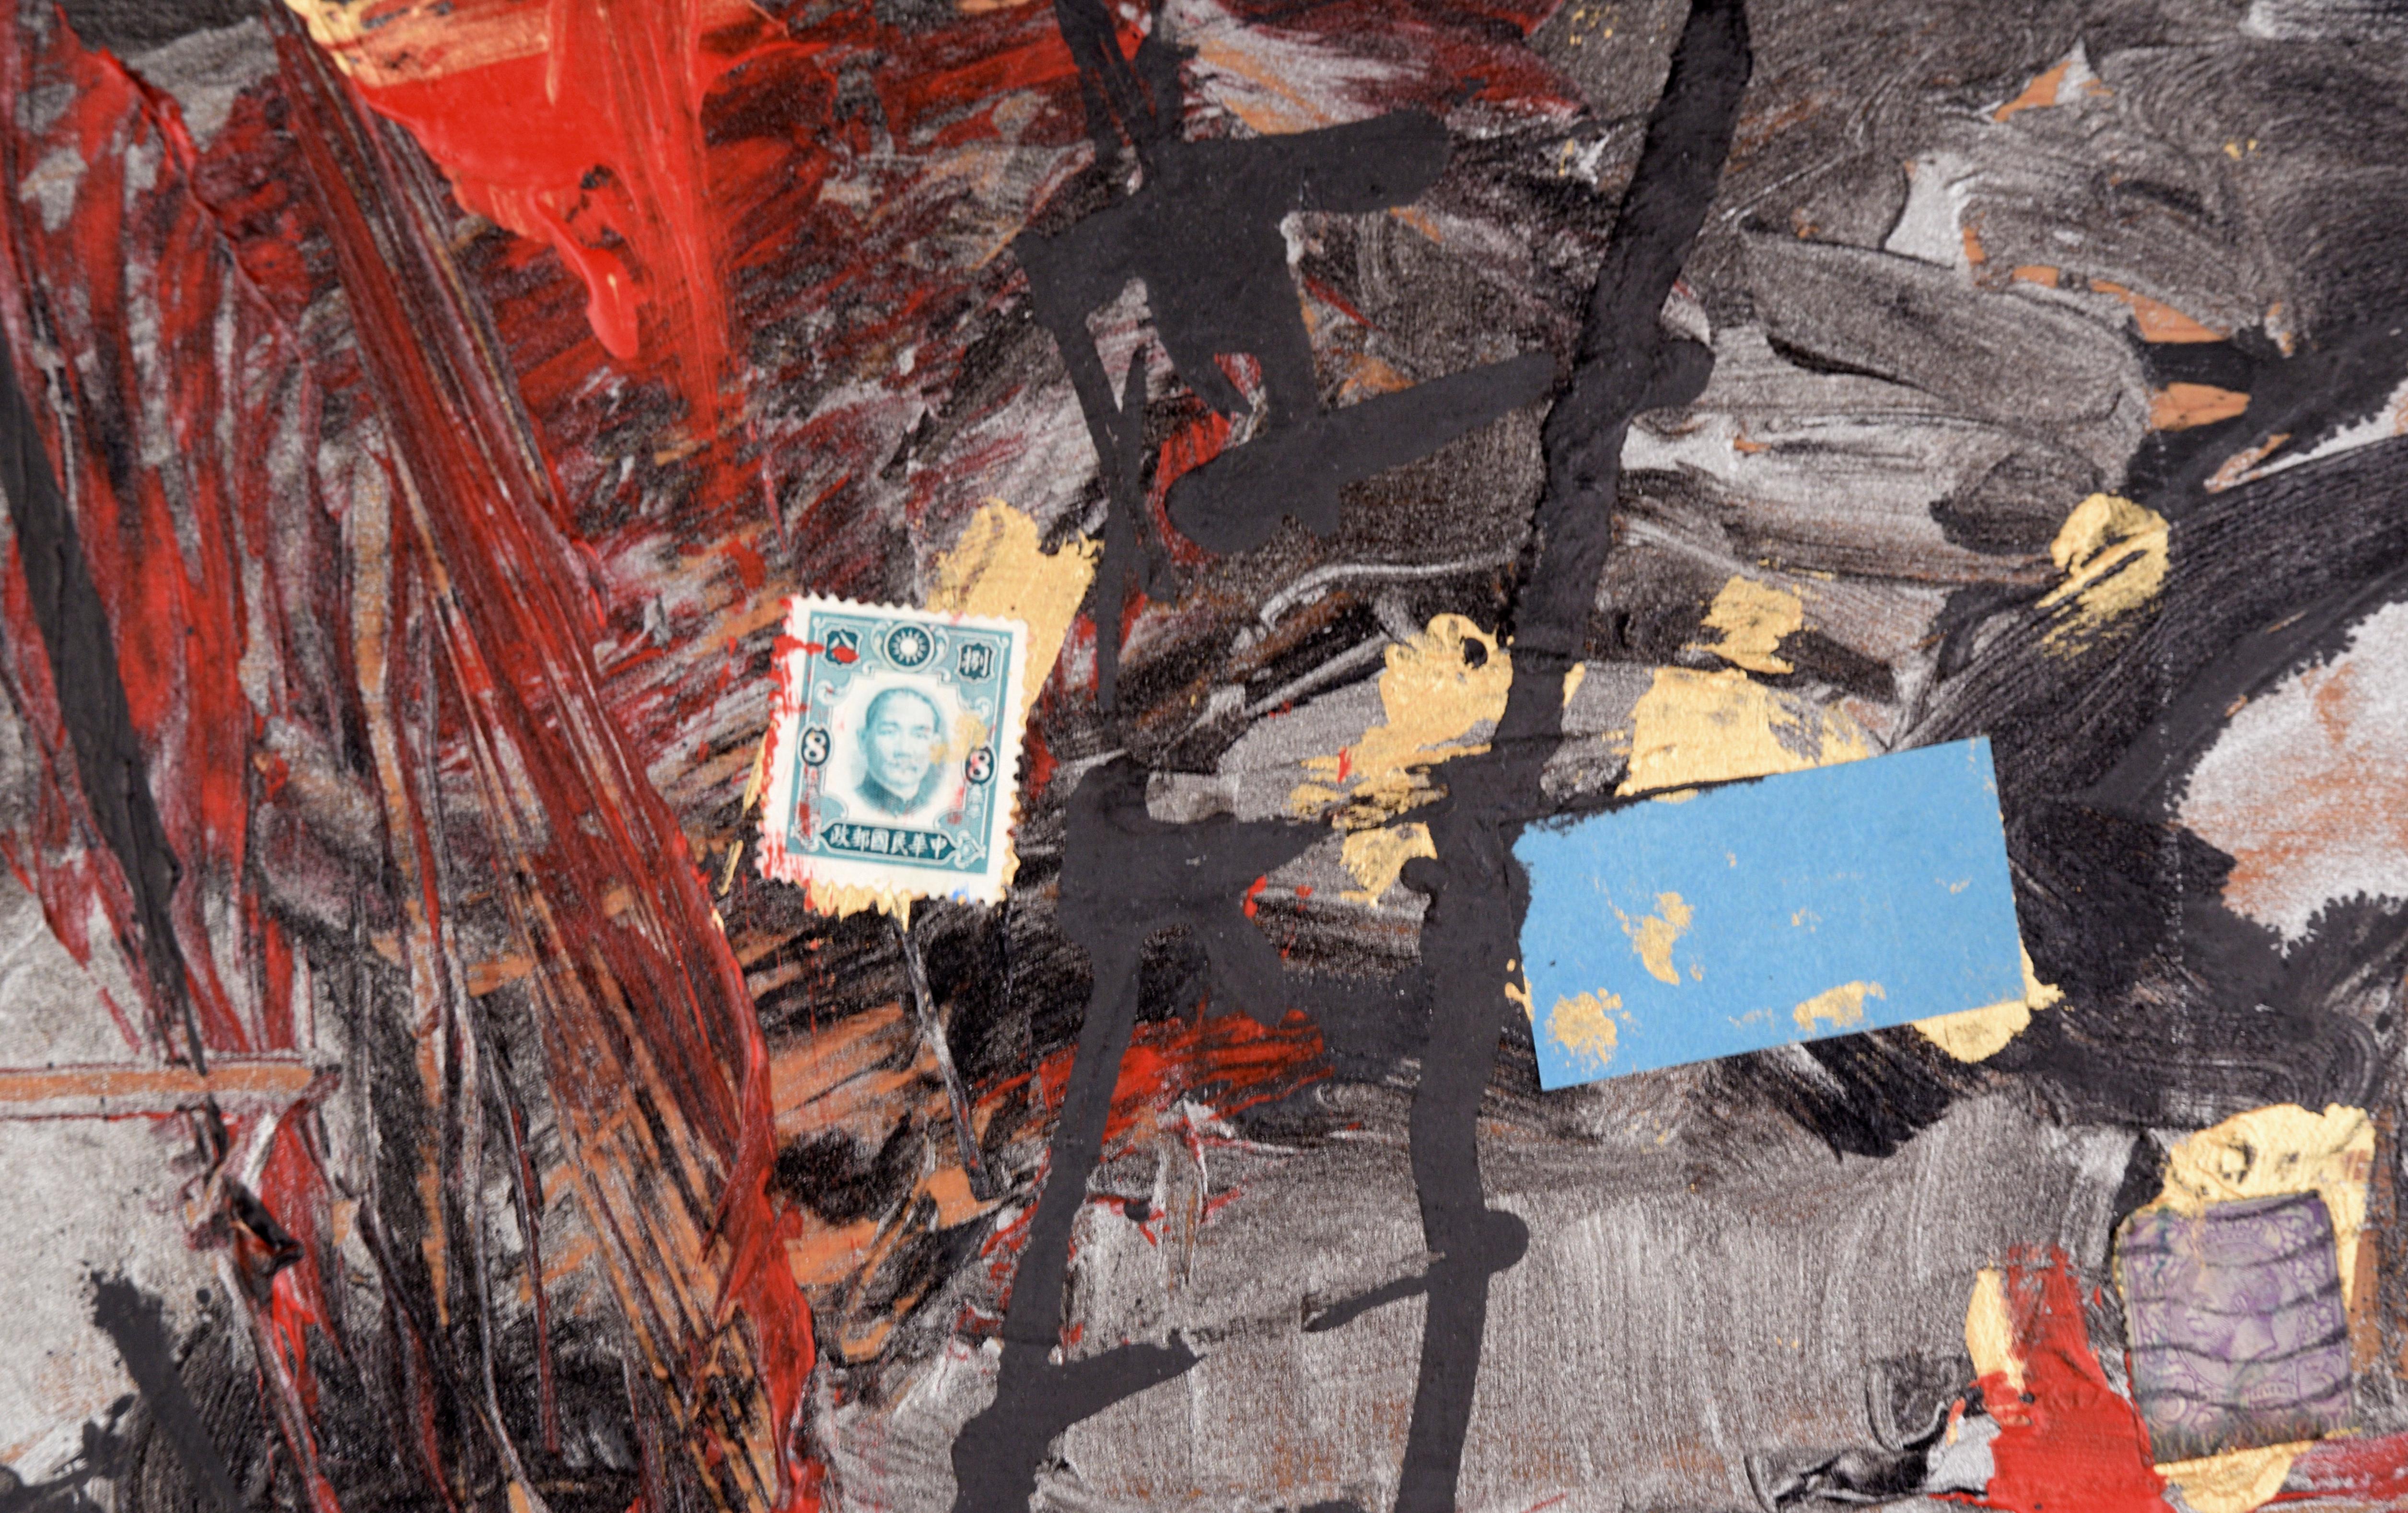 Assemblage n° 2 (La lettre E, les glissières en verre et les tampons) - Expressionnisme abstrait Painting par Michael Pauker 